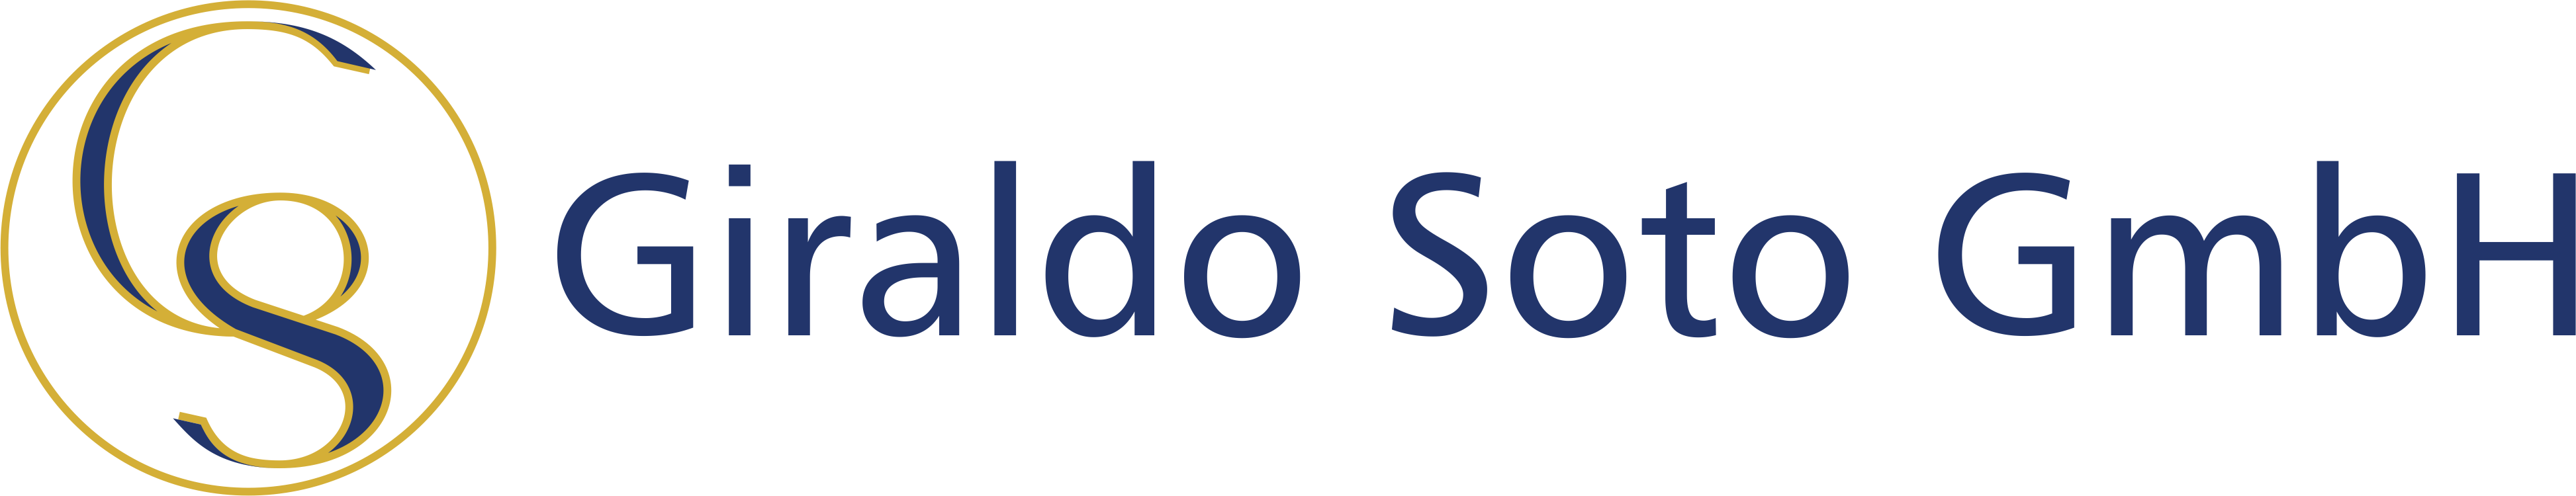 Giraldo Soto GmbH